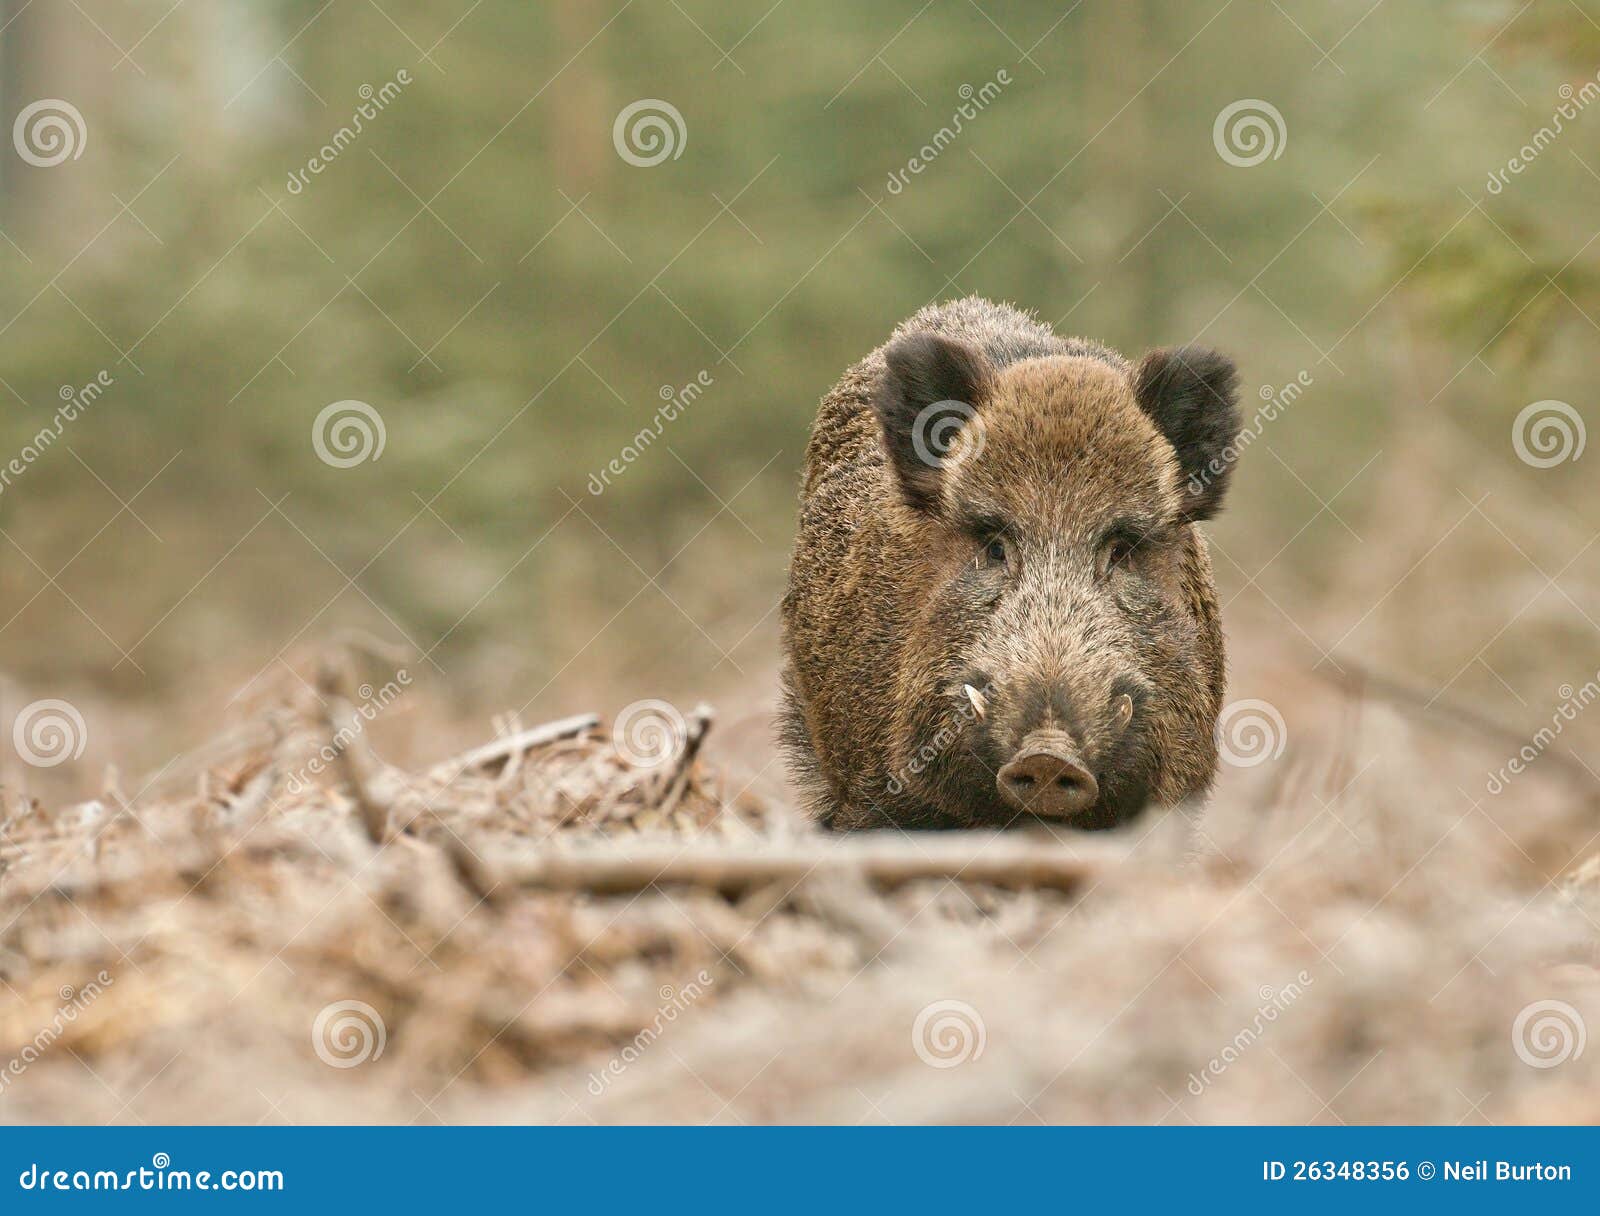 wild boar male in german forest